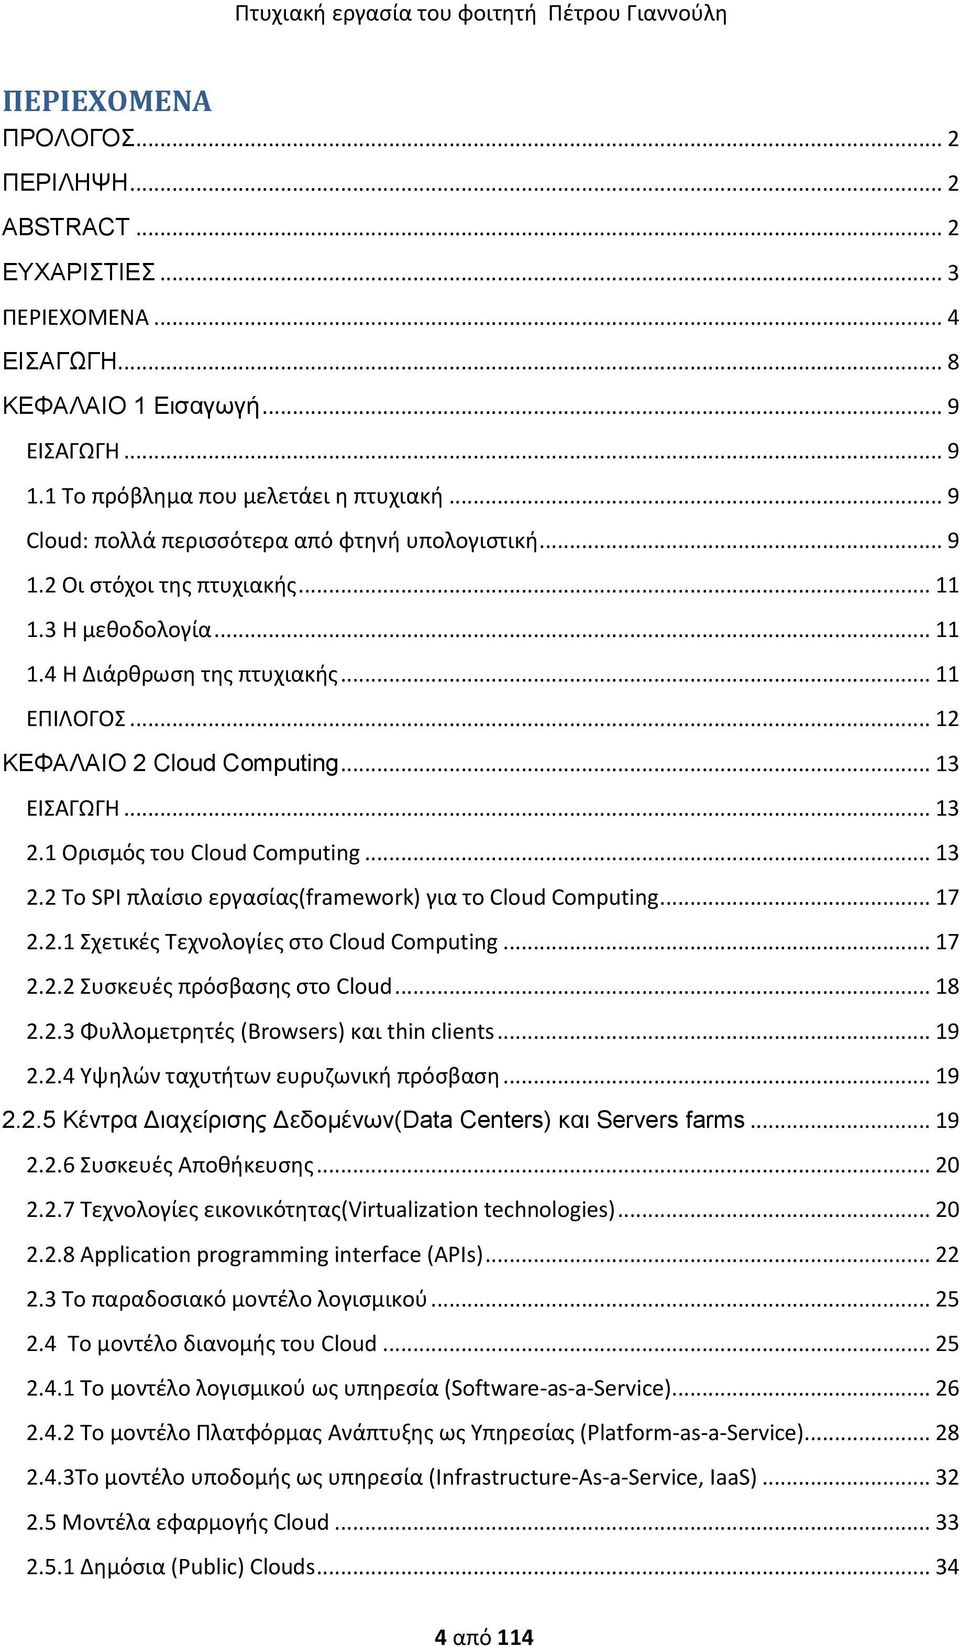 .. 13 ΕΙΑΓΩΓΗ... 13 2.1 Οριςμόσ του Cloud Computing... 13 2.2 Σο SPI πλαίςιο εργαςίασ(framework) για το Cloud Computing... 17 2.2.1 χετικζσ Σεχνολογίεσ ςτο Cloud Computing... 17 2.2.2 υςκευζσ πρόςβαςθσ ςτο Cloud.